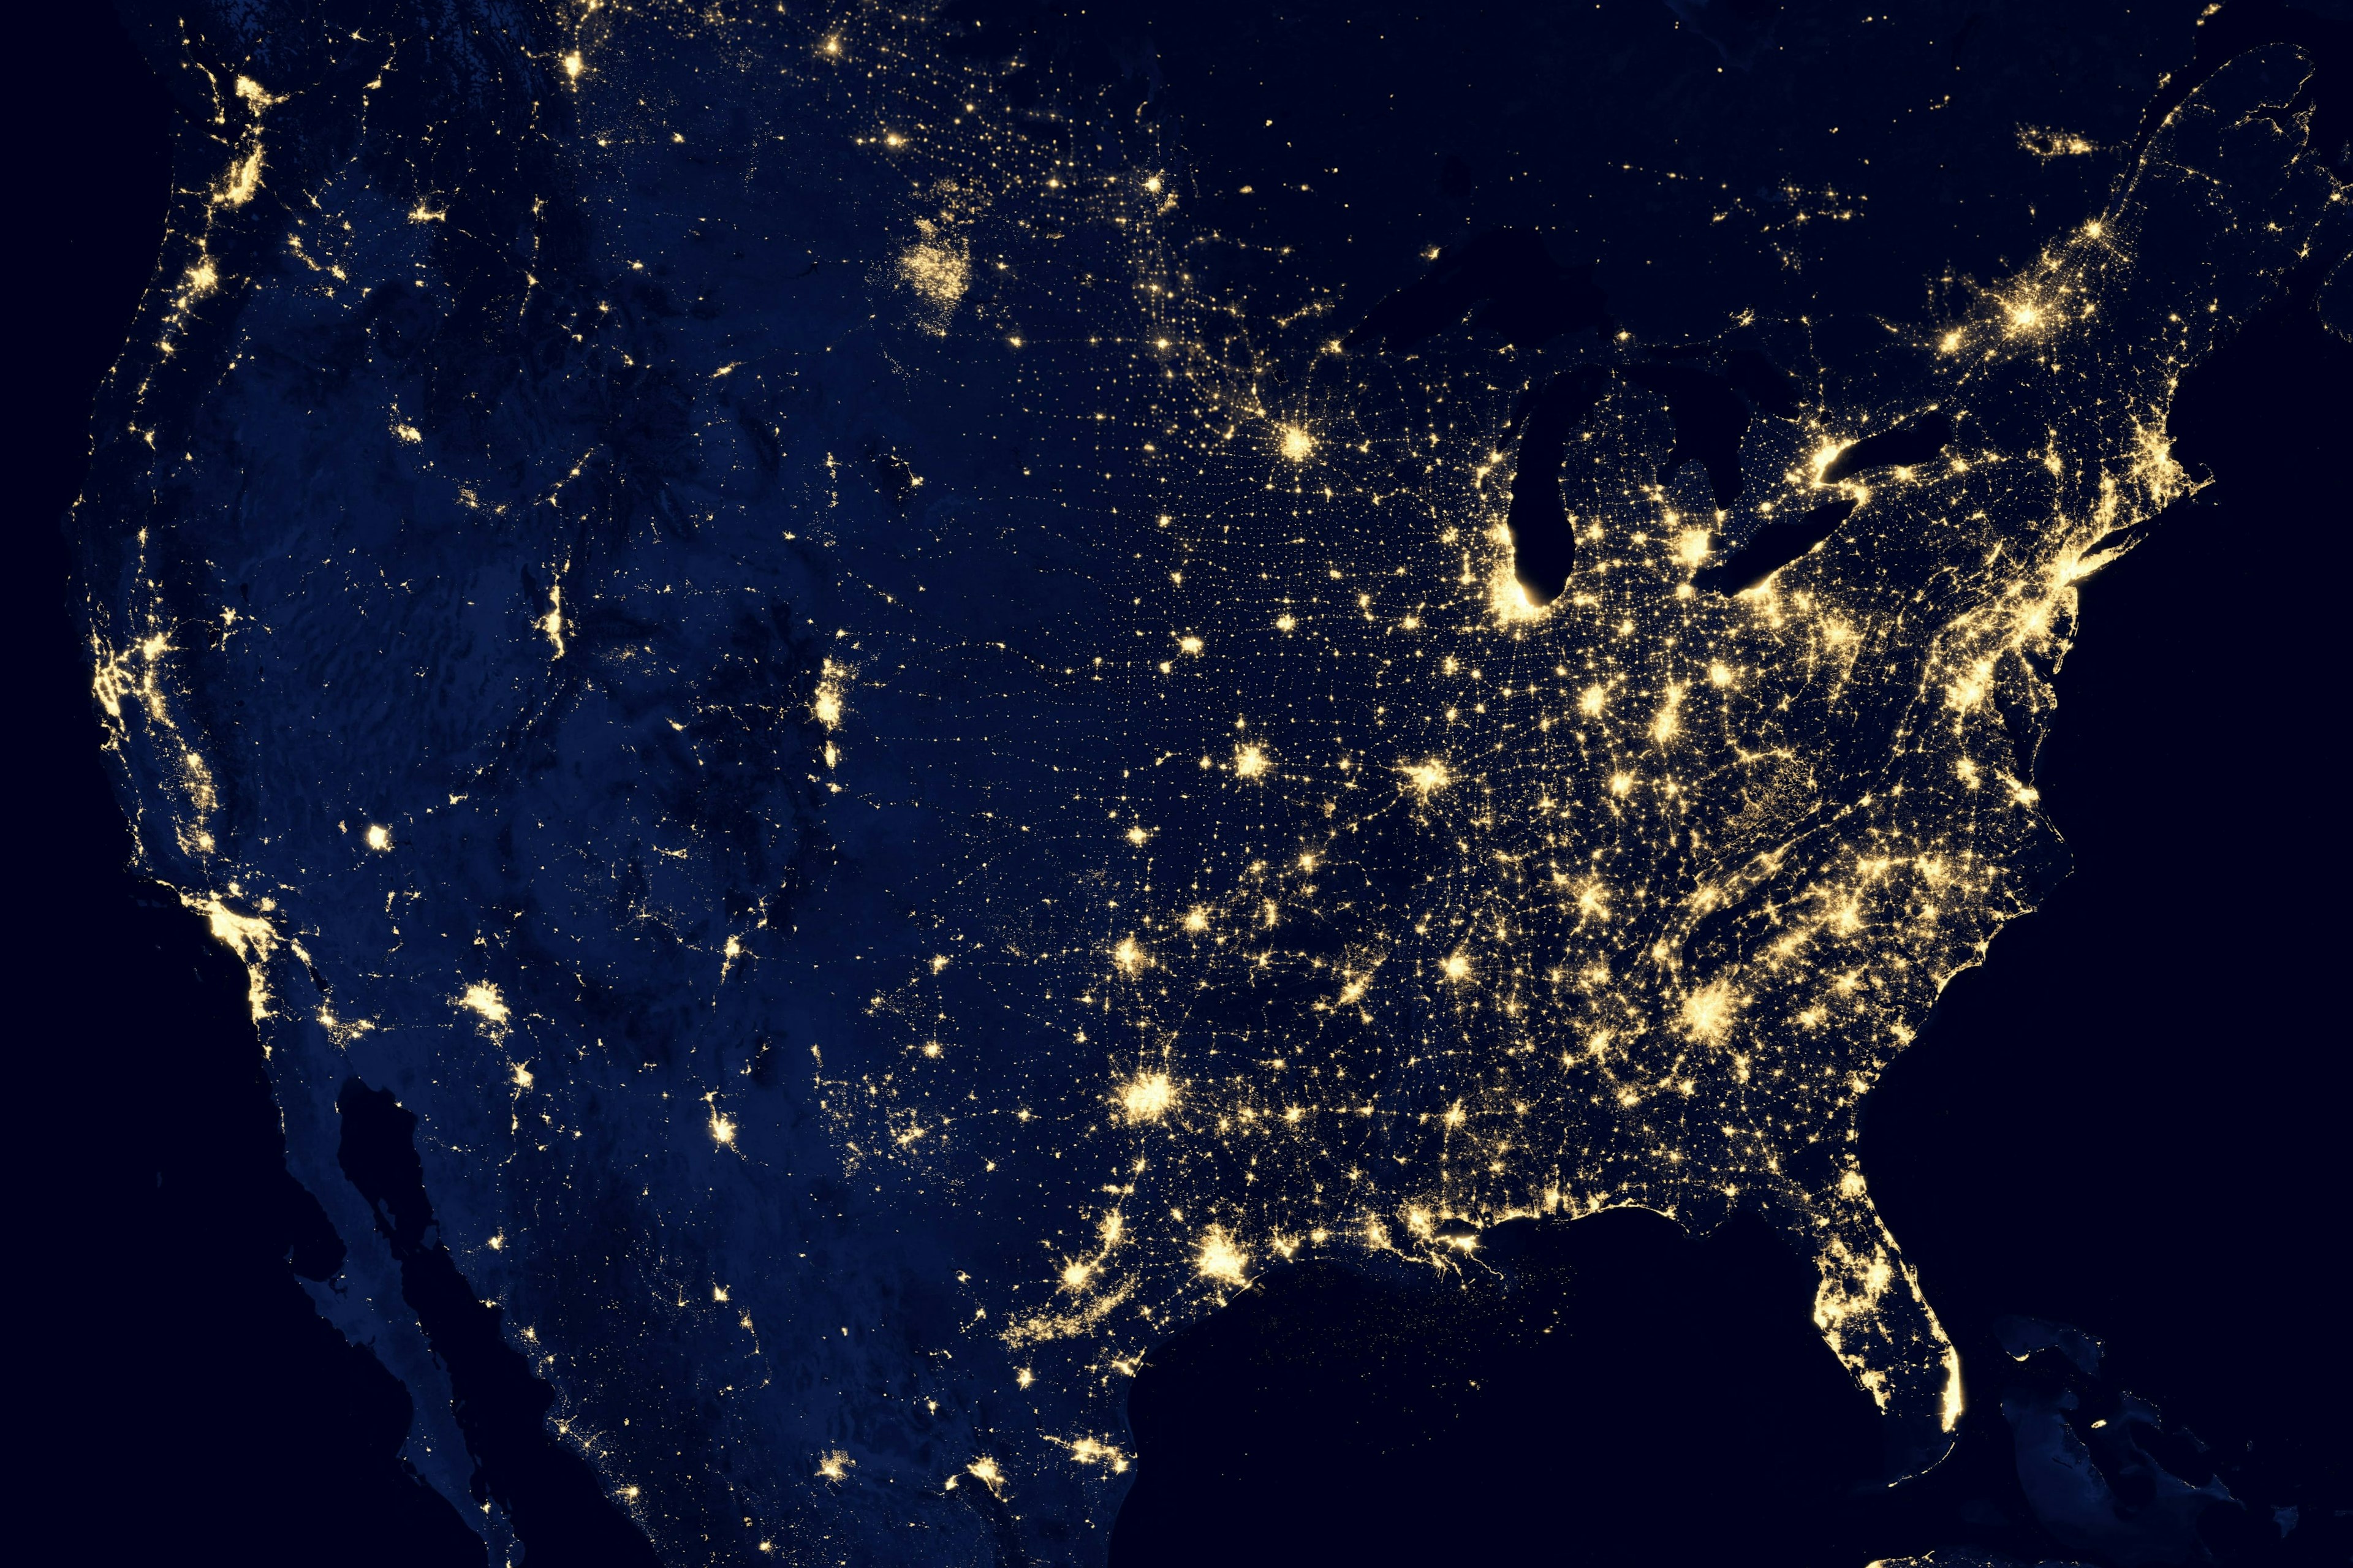 Image of the US grid illuminated